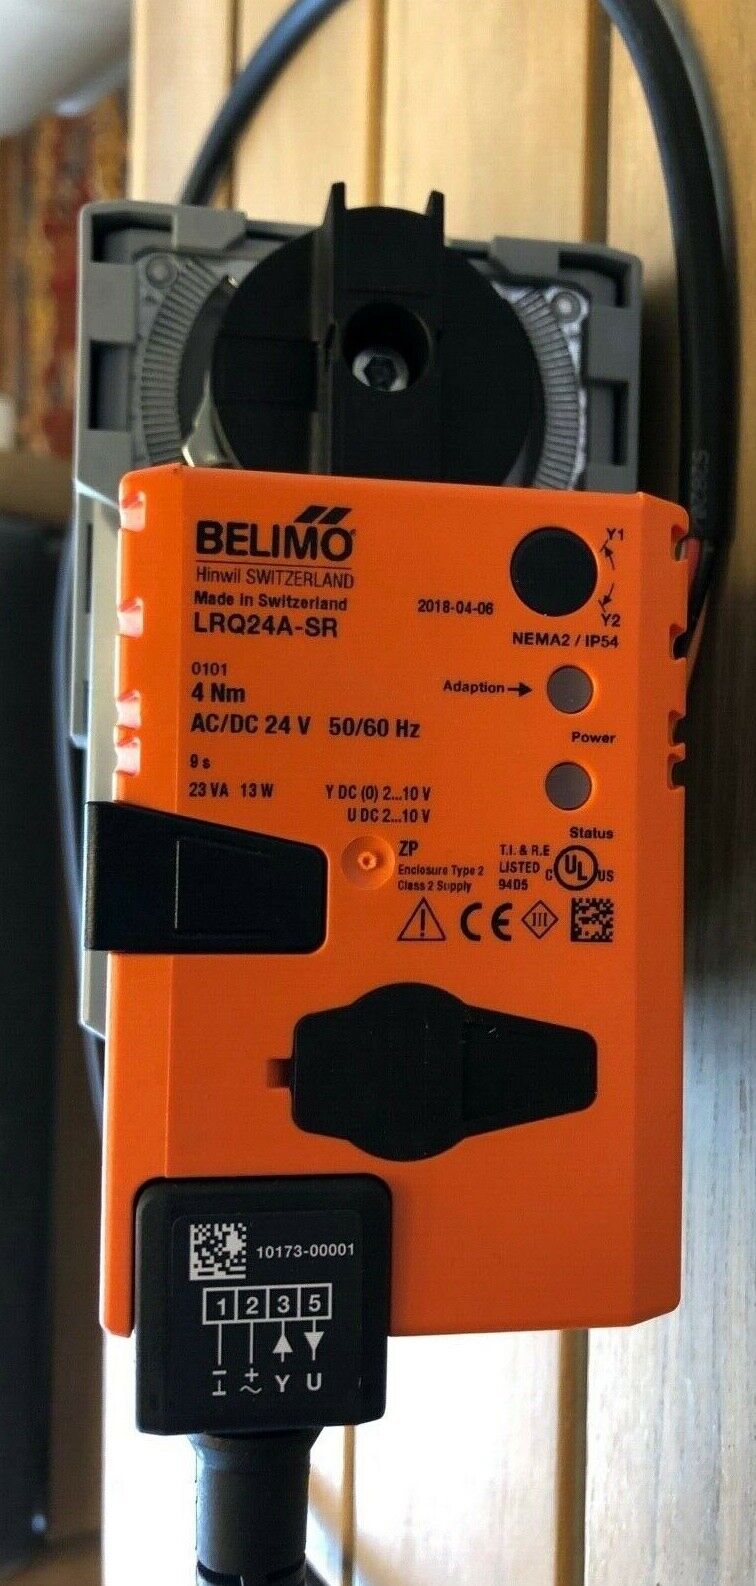 Belimo LRQ24A-SR Antrieb für Kugelhahn 4Nm AC DC 24V mit Anschluss R2015-6P3-S1